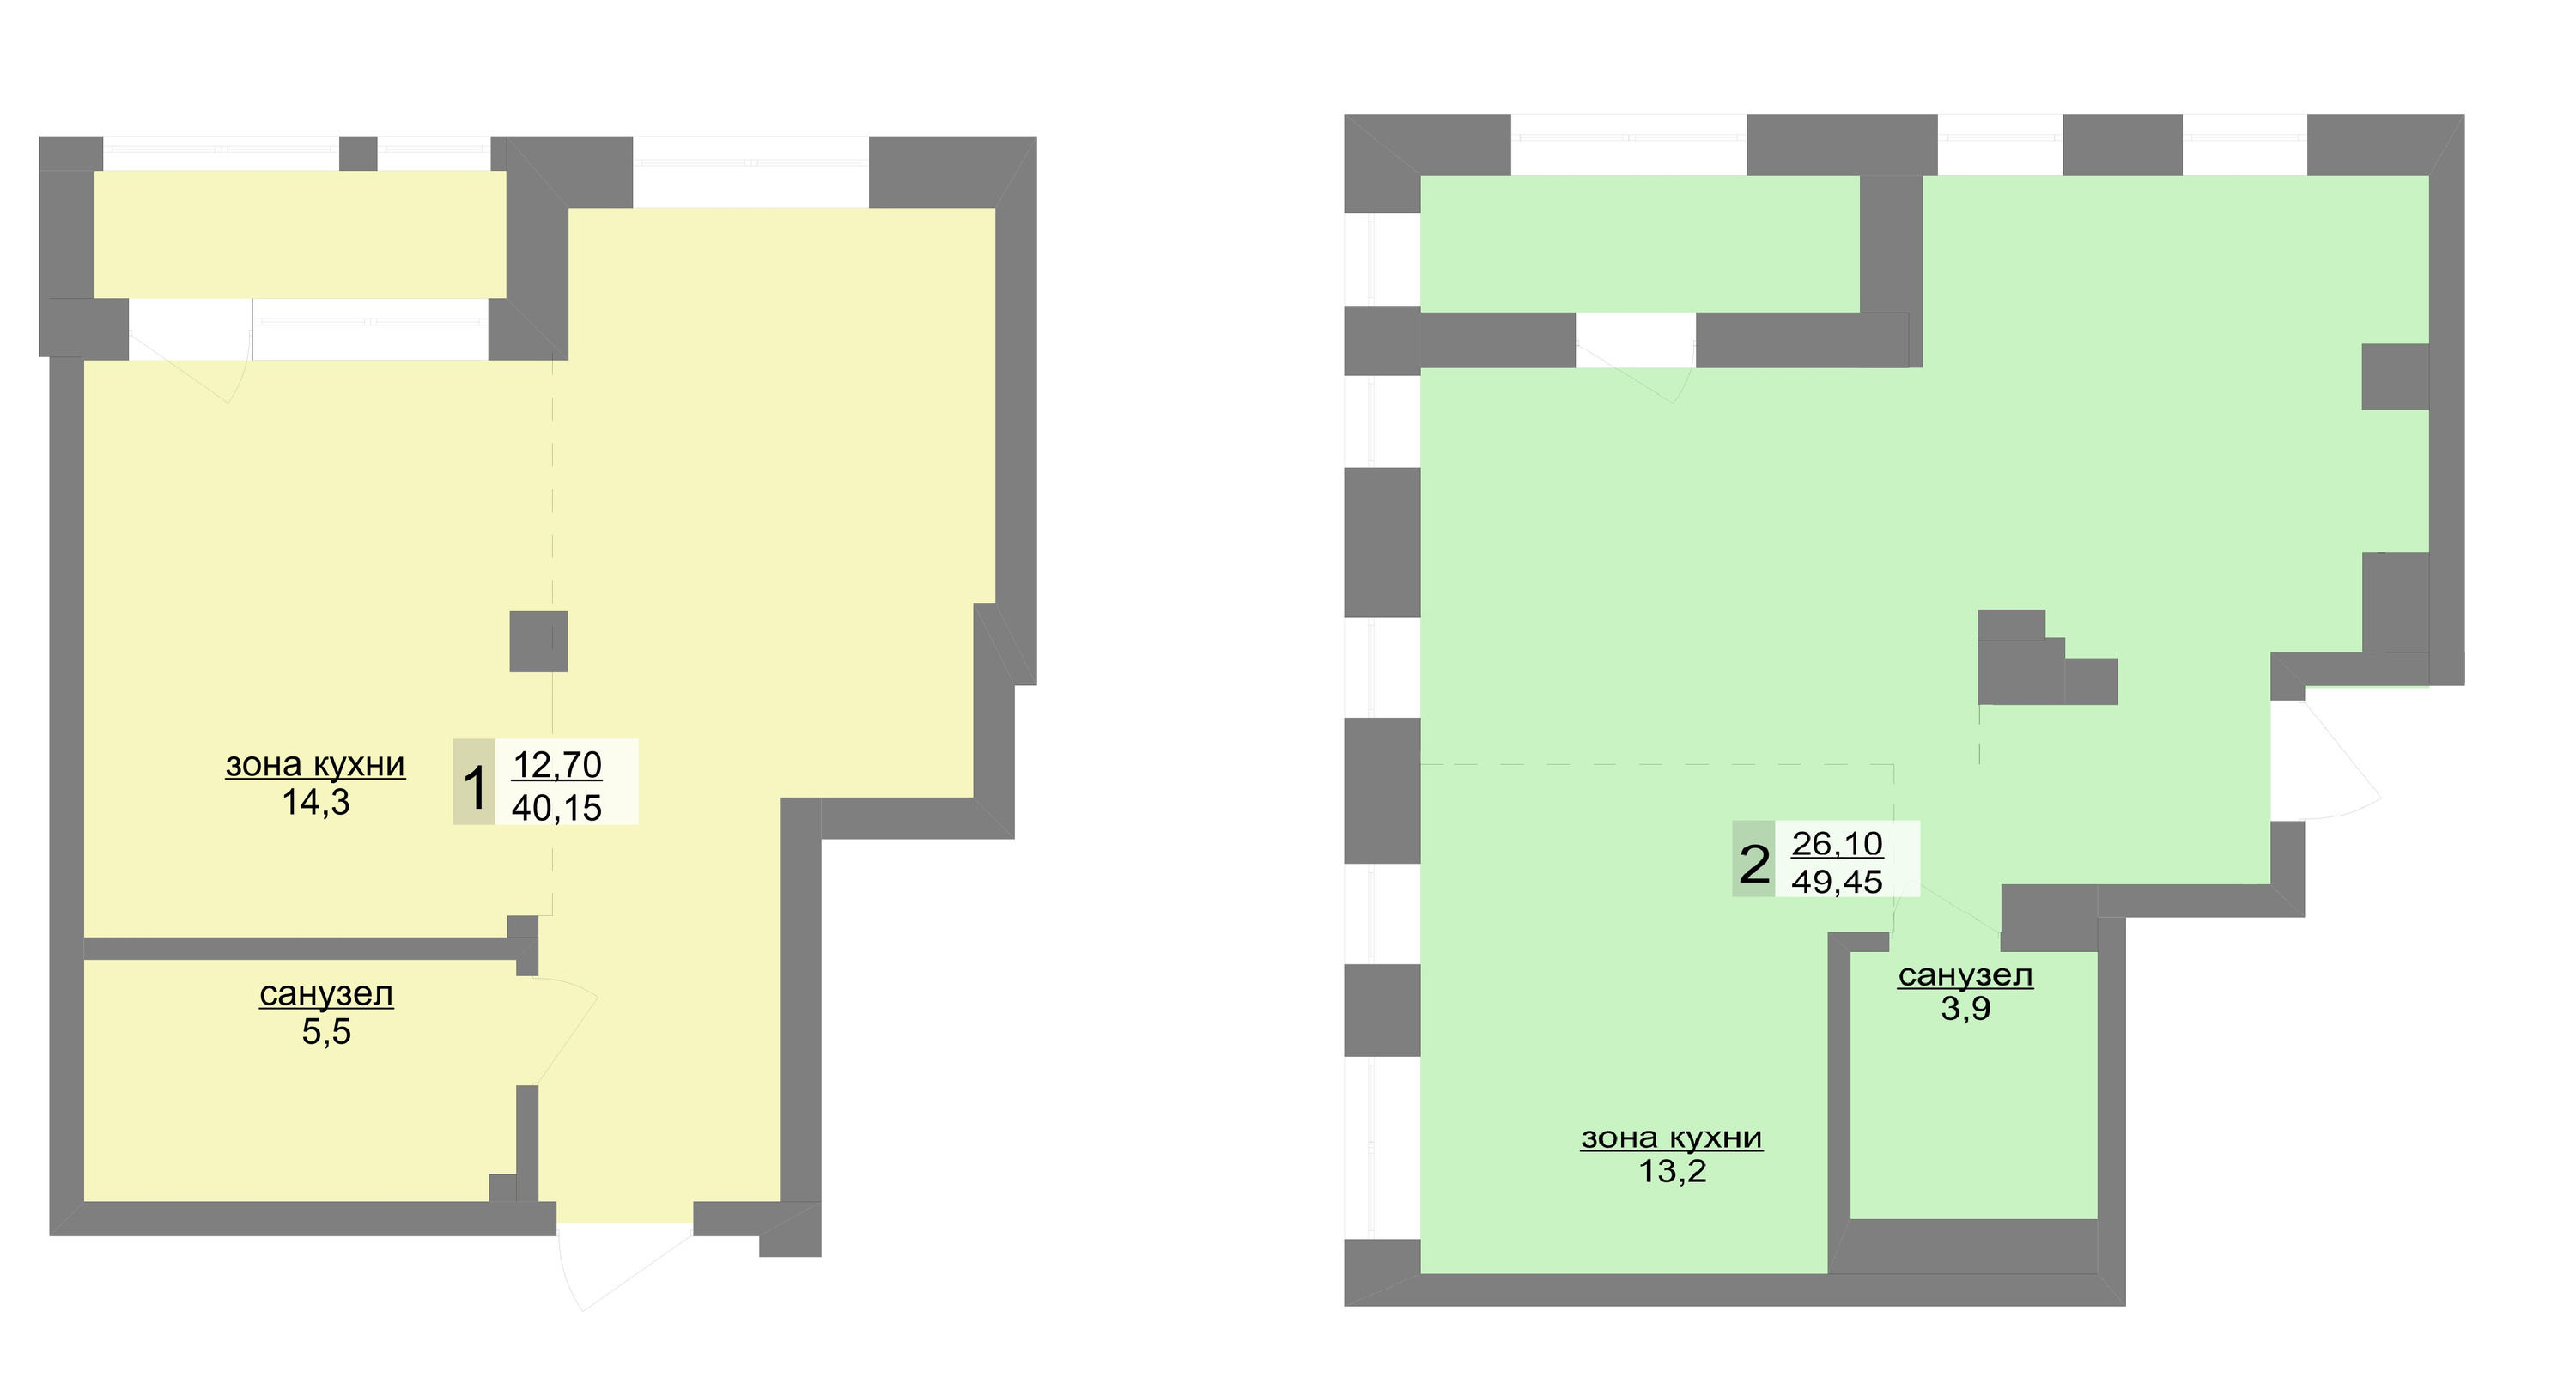 В квартирах есть лоджии, где будет удобно организовать кабинет, лаундж-пространство или место для занятий йогой